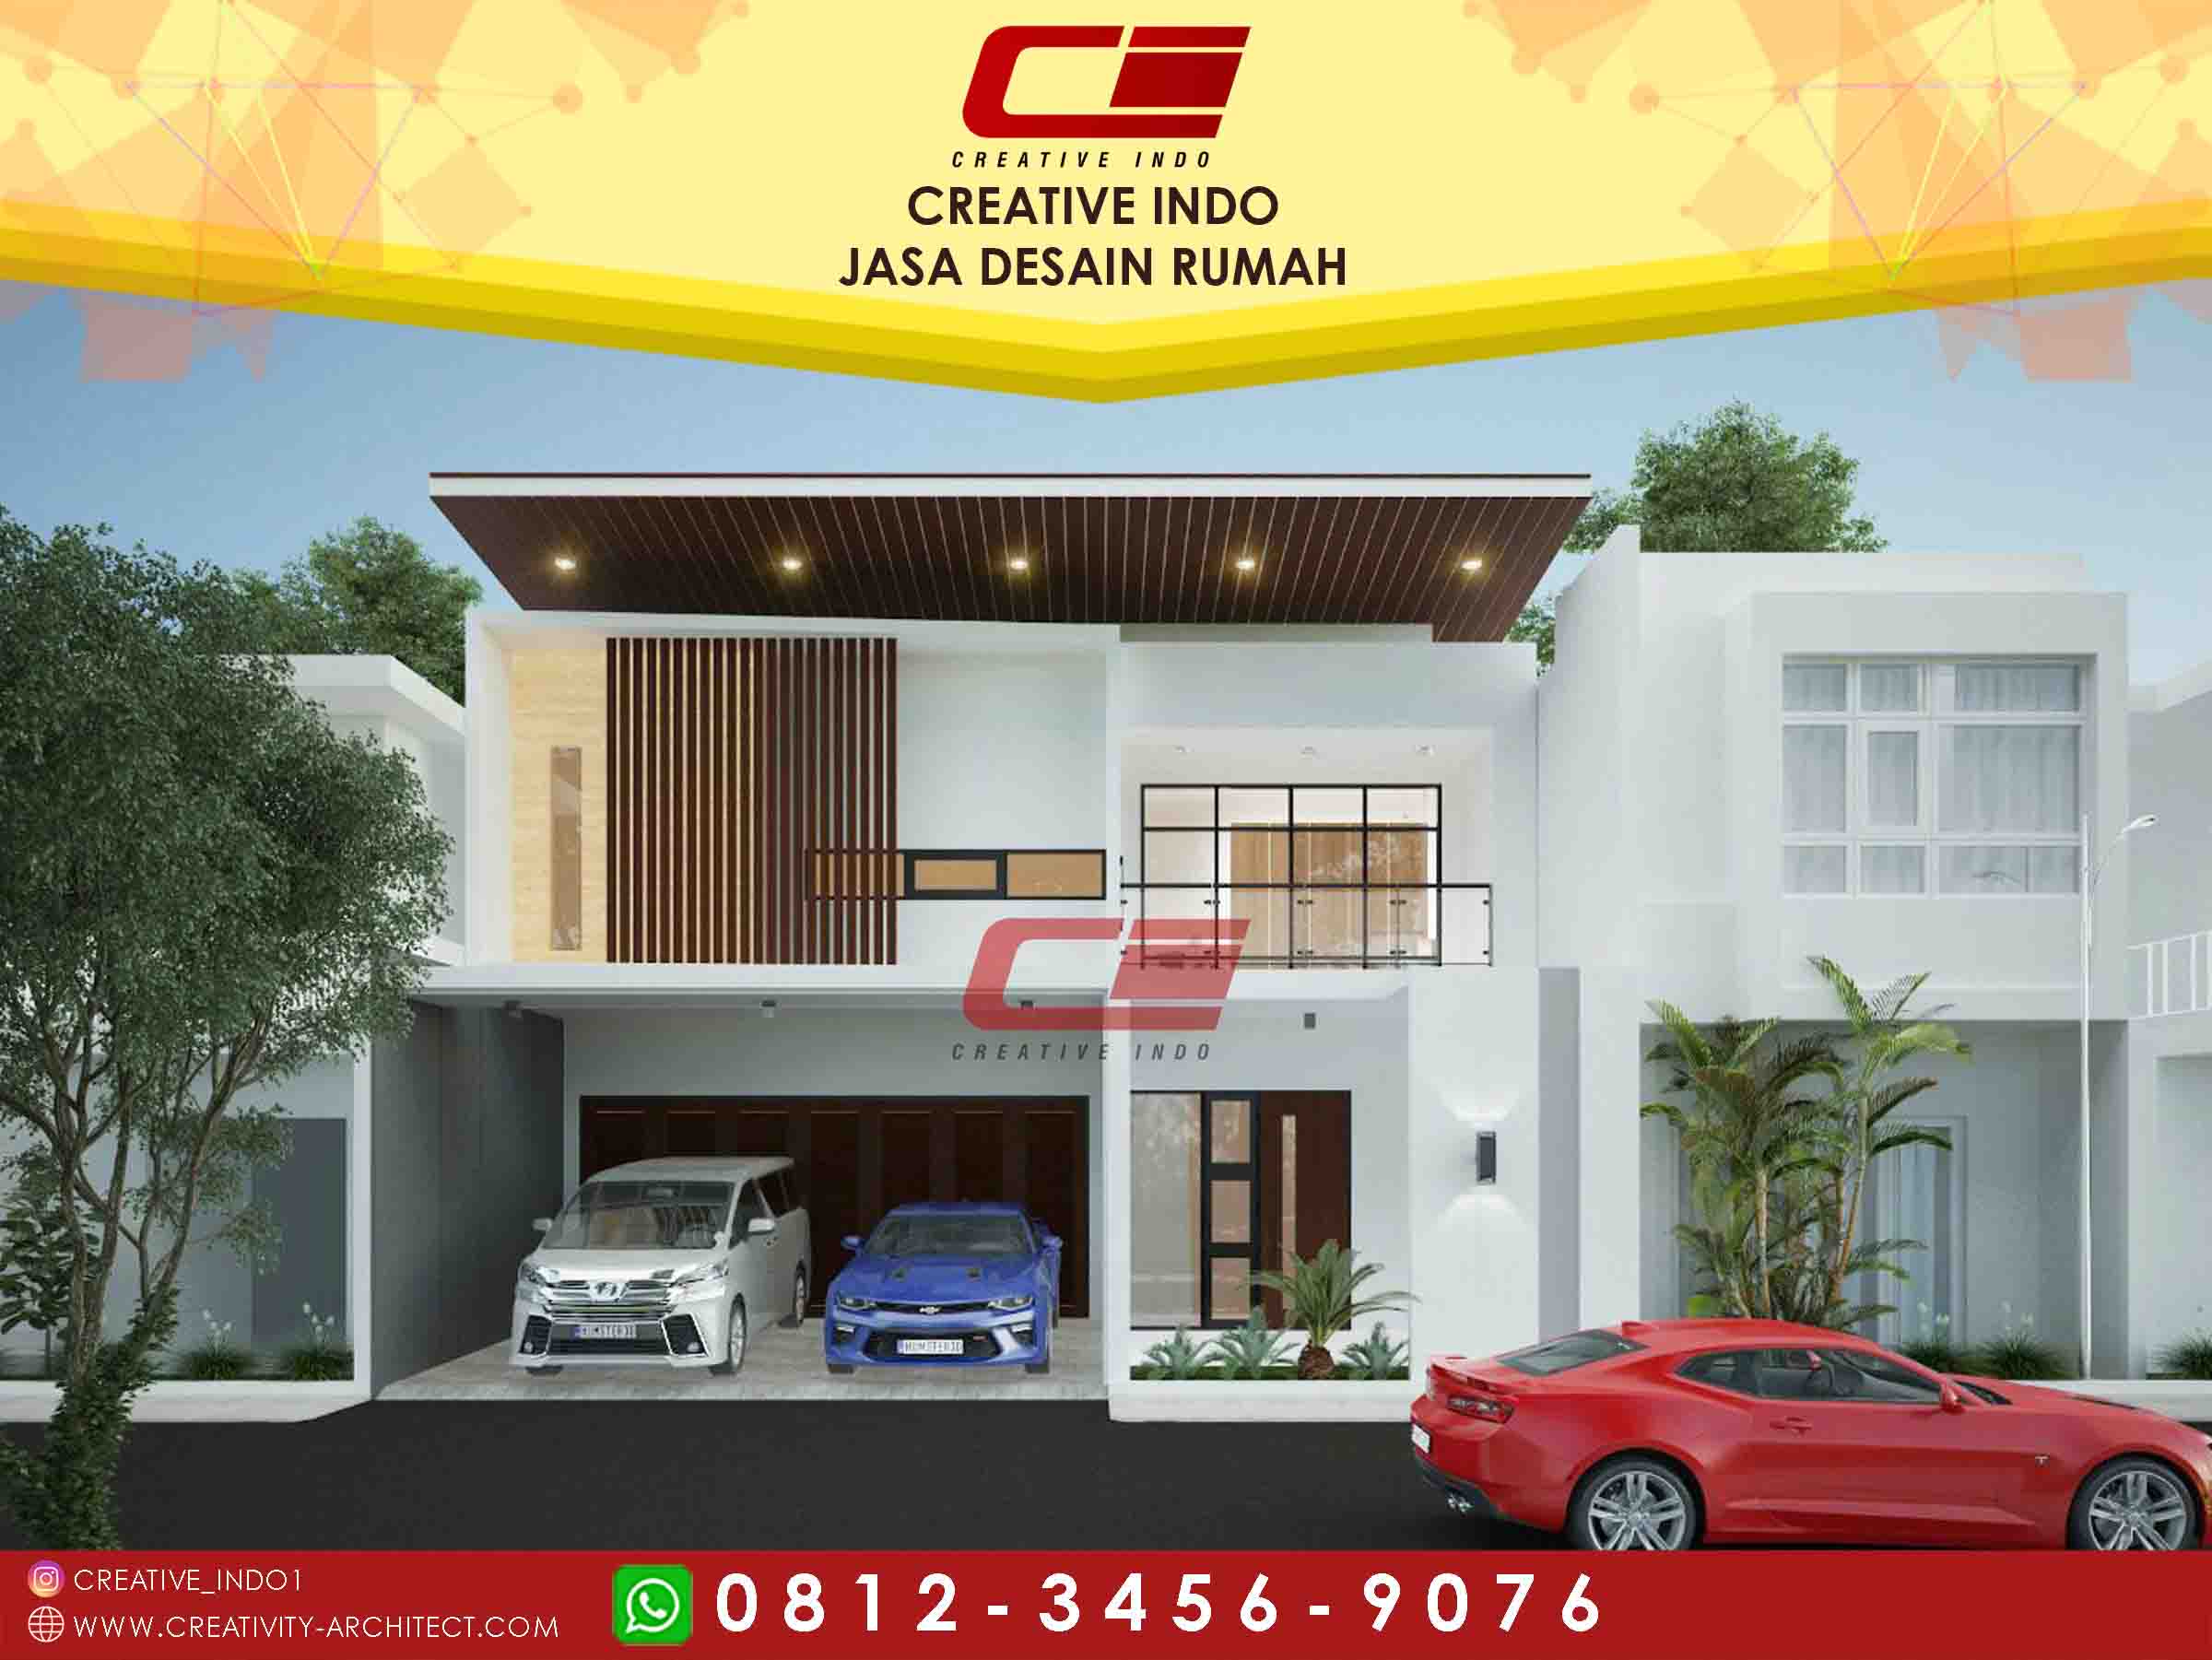 Jasa Desain Rumah Makassar